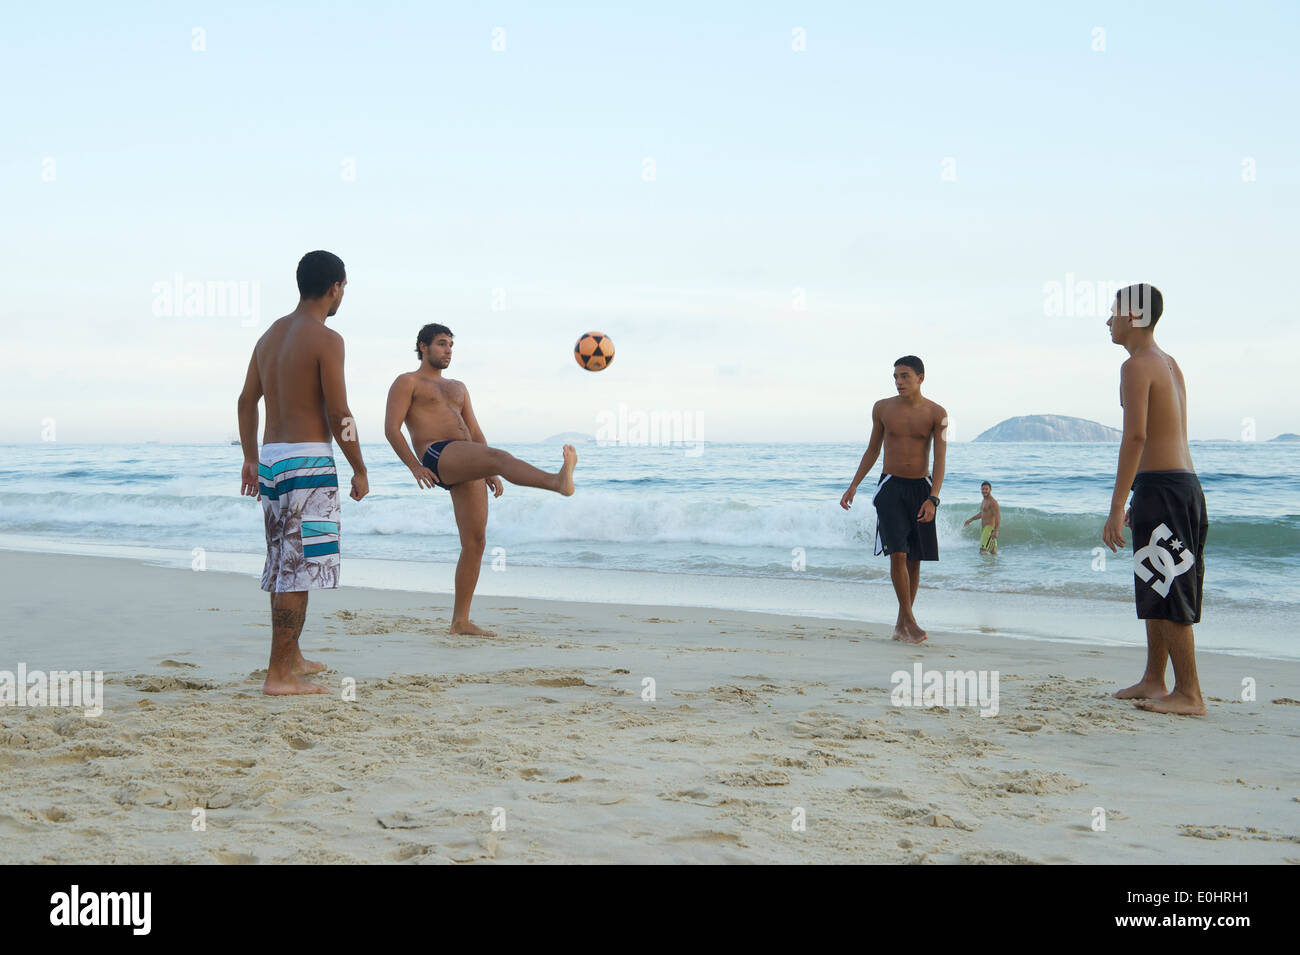 RIO DE JANEIRO, Brasilien - 1. April 2014: Gruppe von jungen Brasilianer keepy uppy Strandfußball spielen am Strand von Ipanema Posto 9. Stockfoto